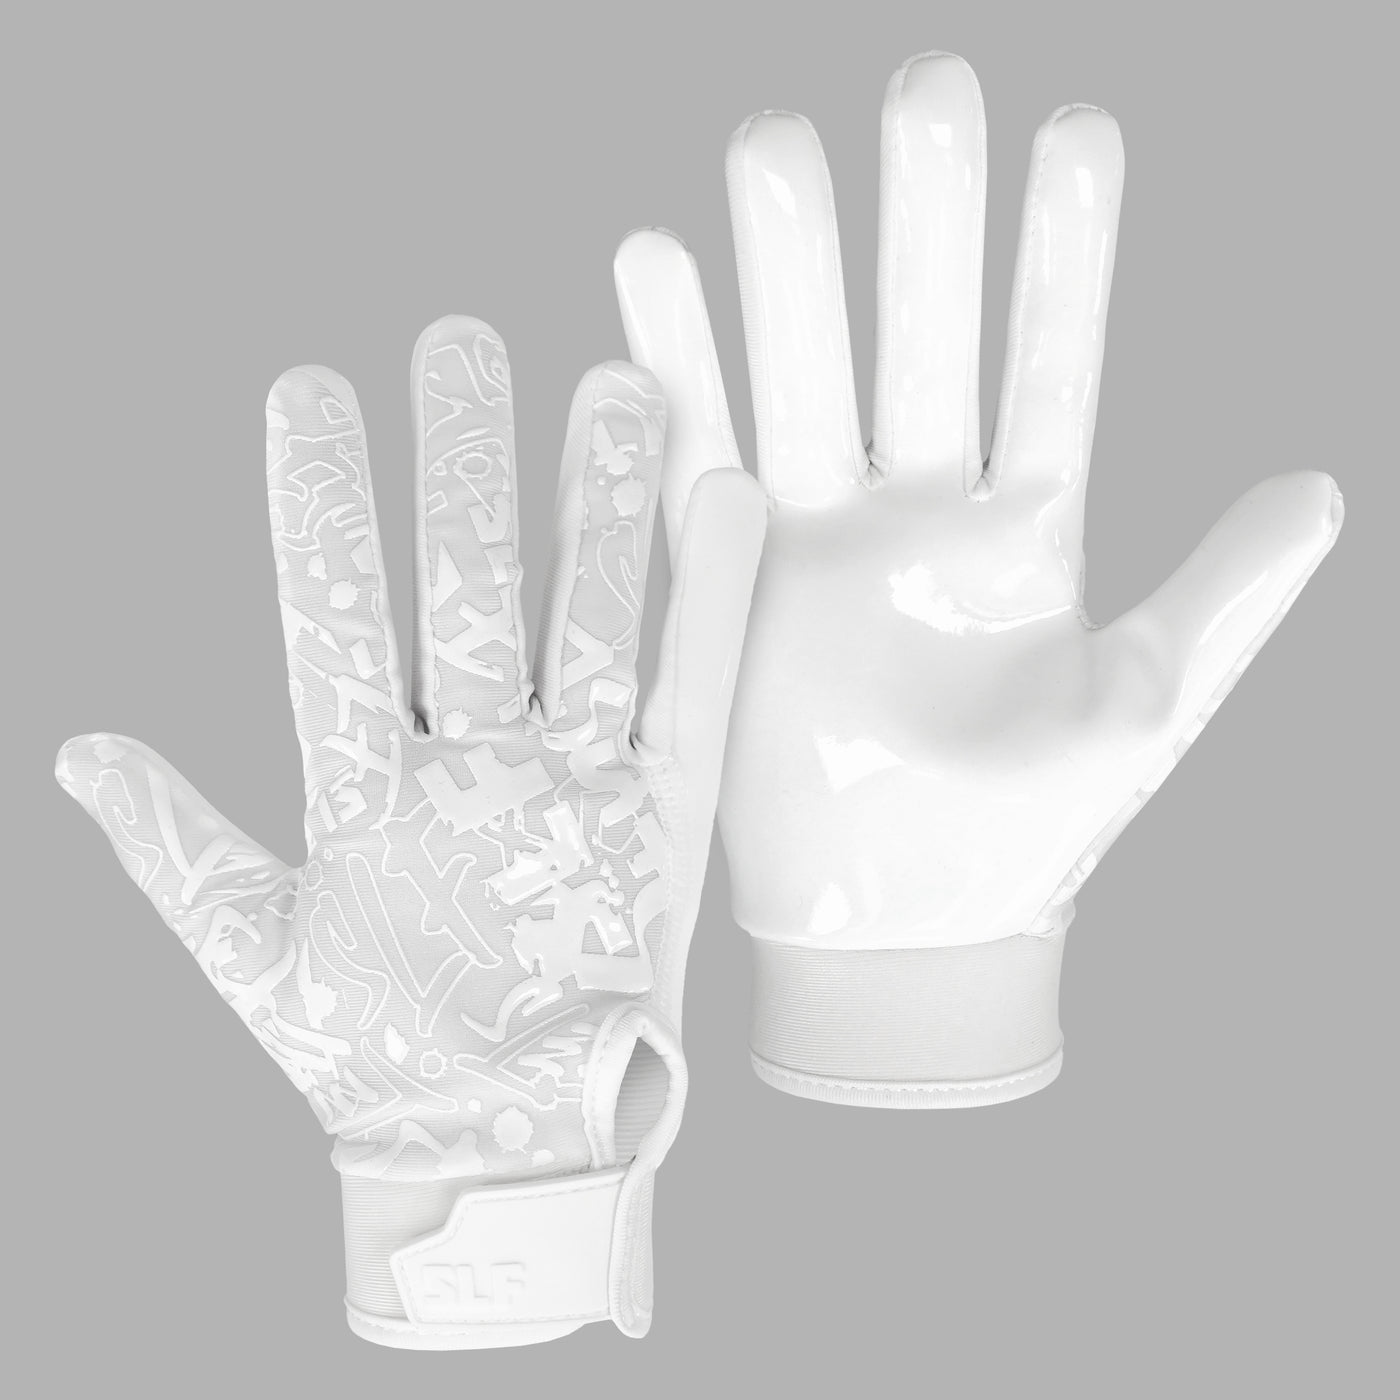 Basic White Sticky Kids Football Receiver Gloves